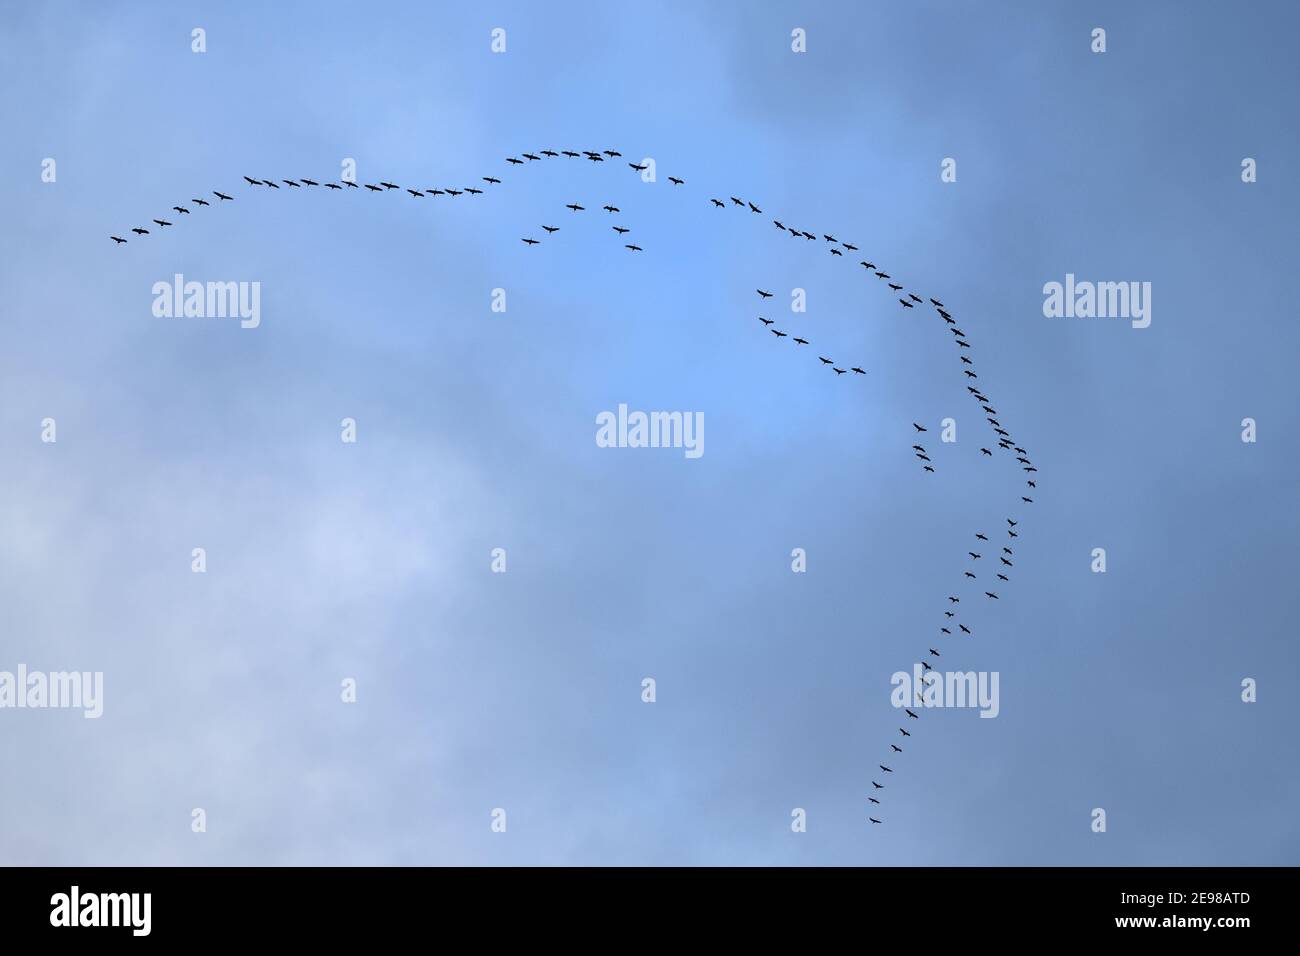 Grullas comunes ( Grus grus ), gran rebaño en vuelo en lo alto del cielo, migración de aves, vida silvestre, Europa. Foto de stock